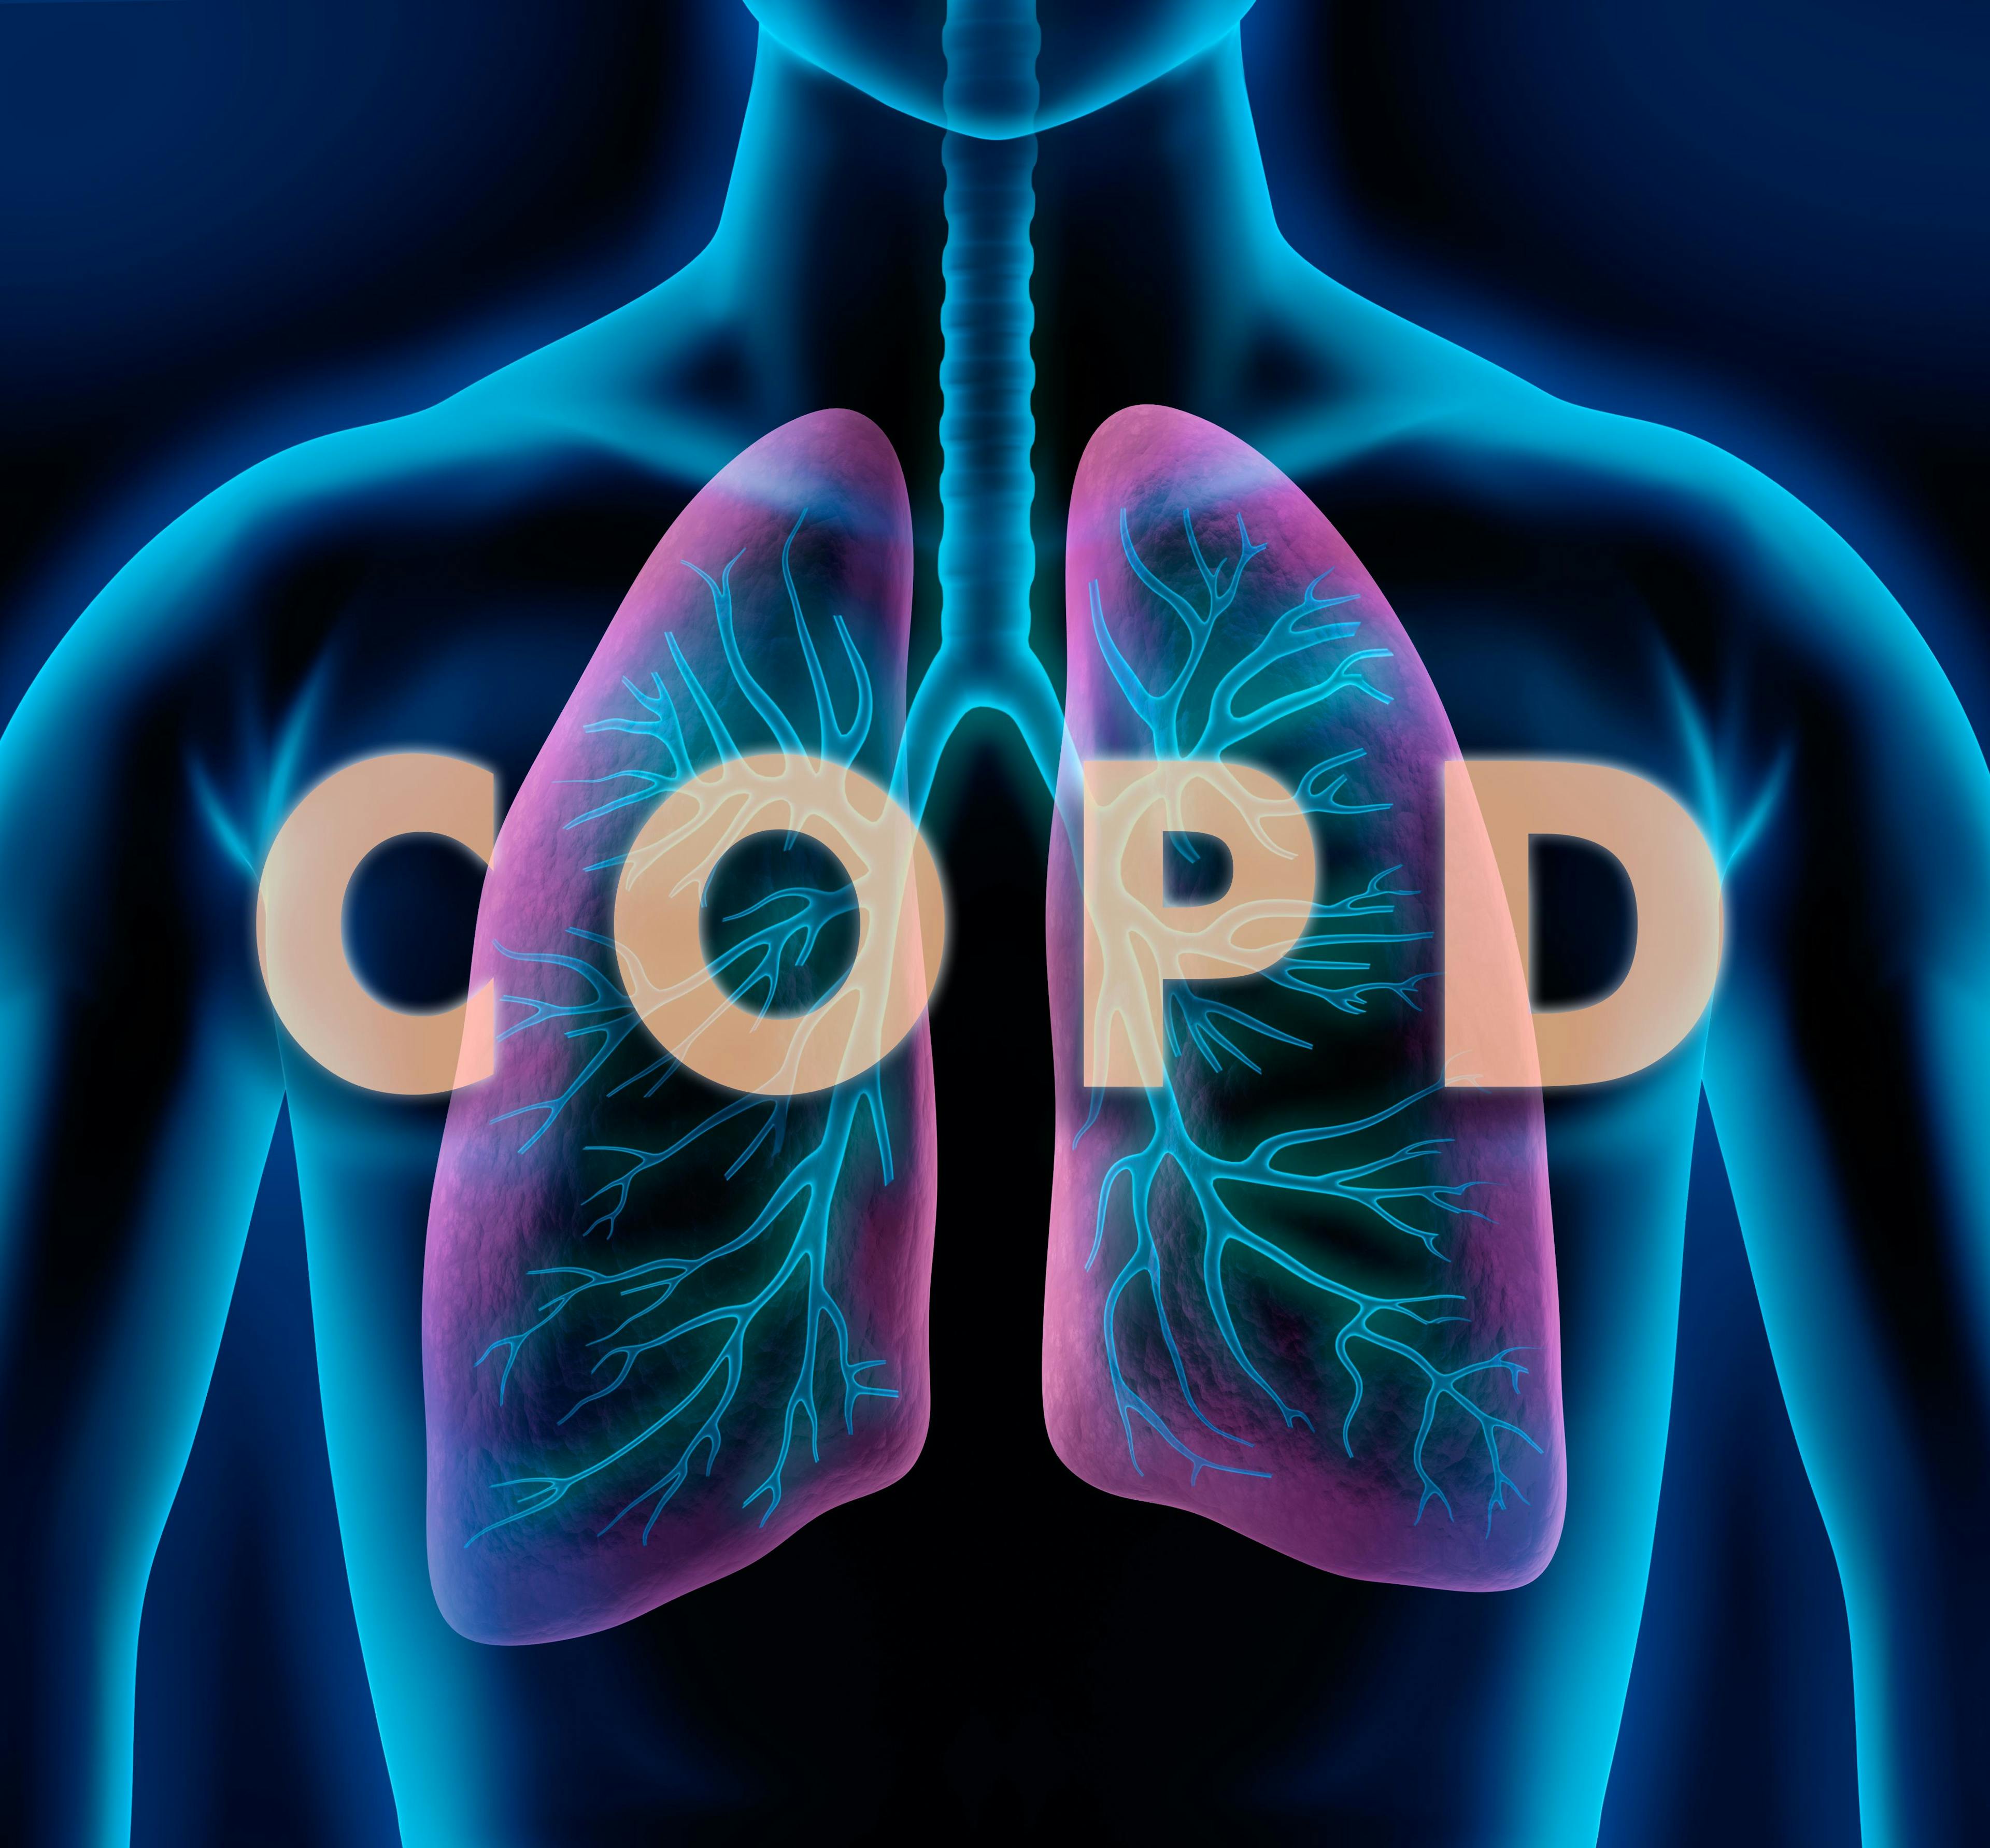 Motiv COPD - Lunge und Bronchien | Image credit: peterschreiber.media - stock.adobe.com